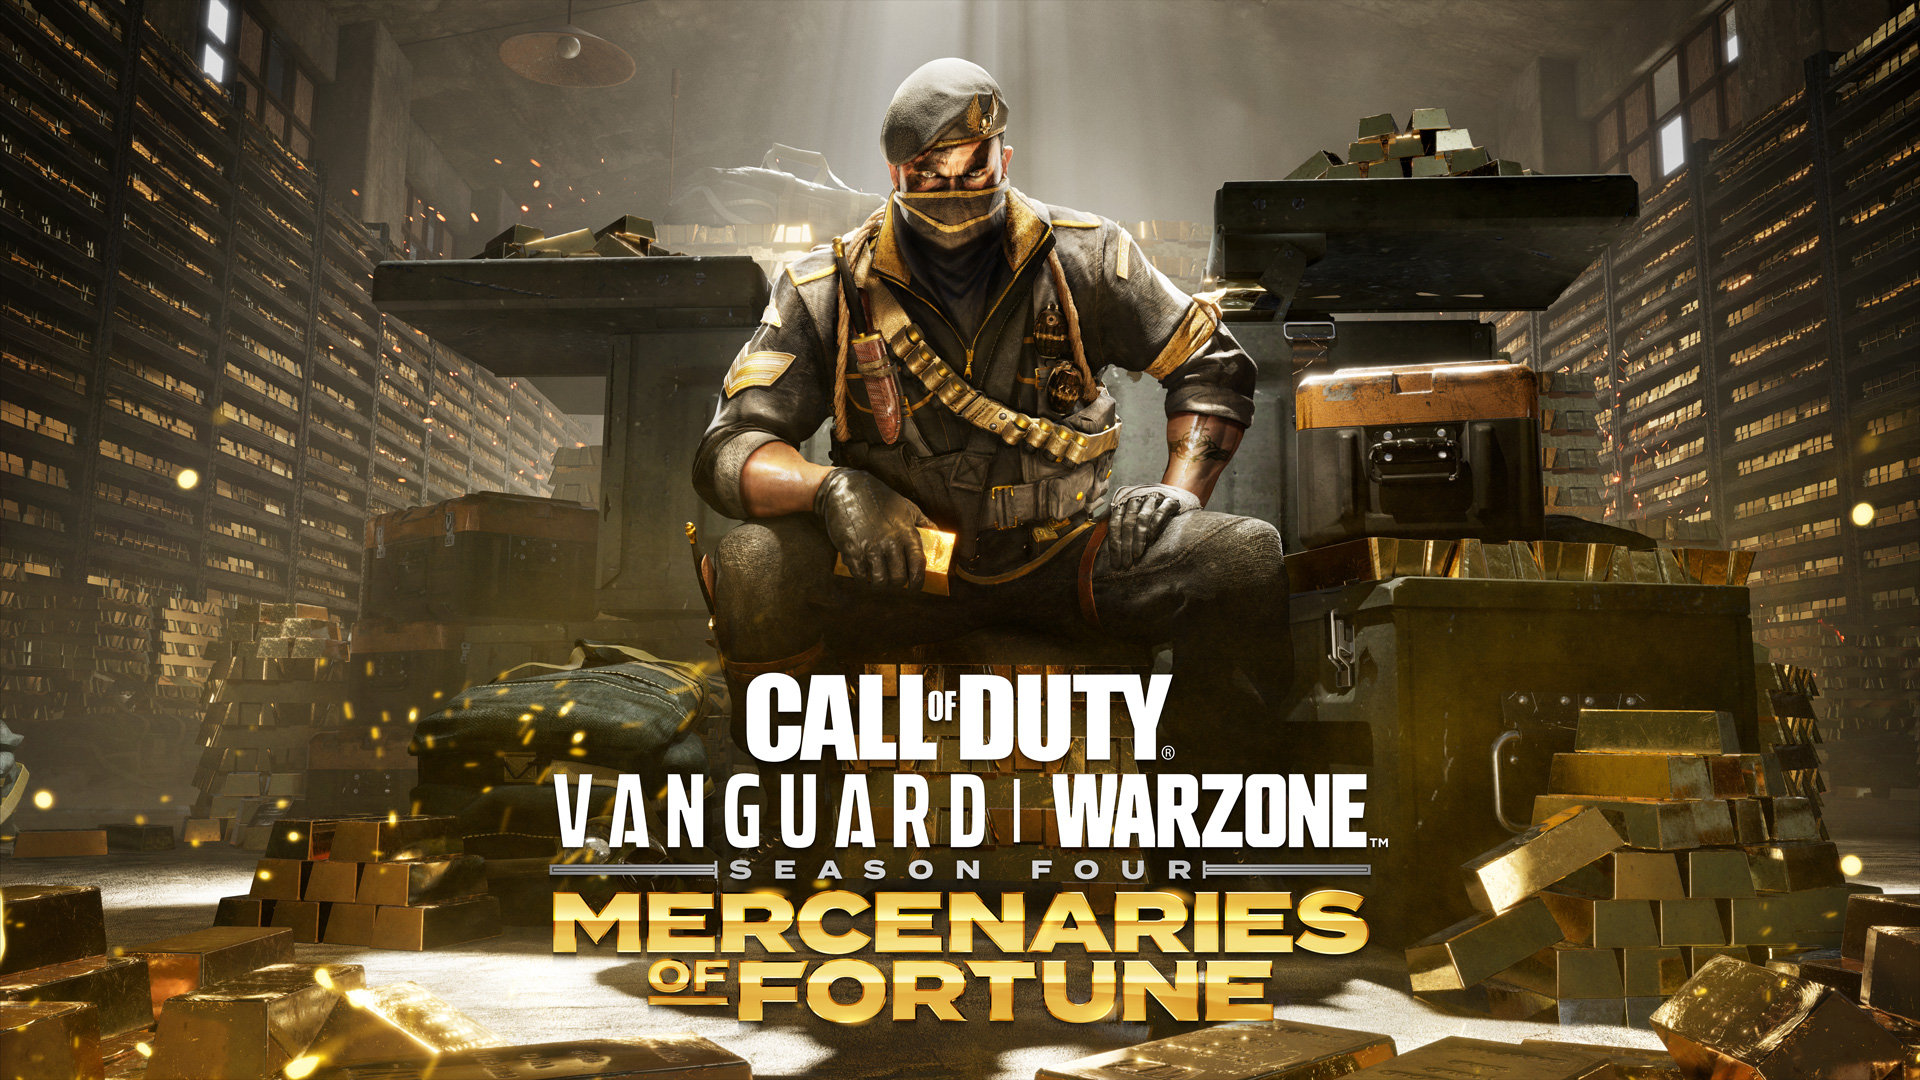 Call of Duty: Vanguard และ Warzone ซีซัน 4 เหล่าทหารรับจ้างผู้มั่งคั่ง จะเคลื่อนพลวันที่ 22 มิถุนายนนี้